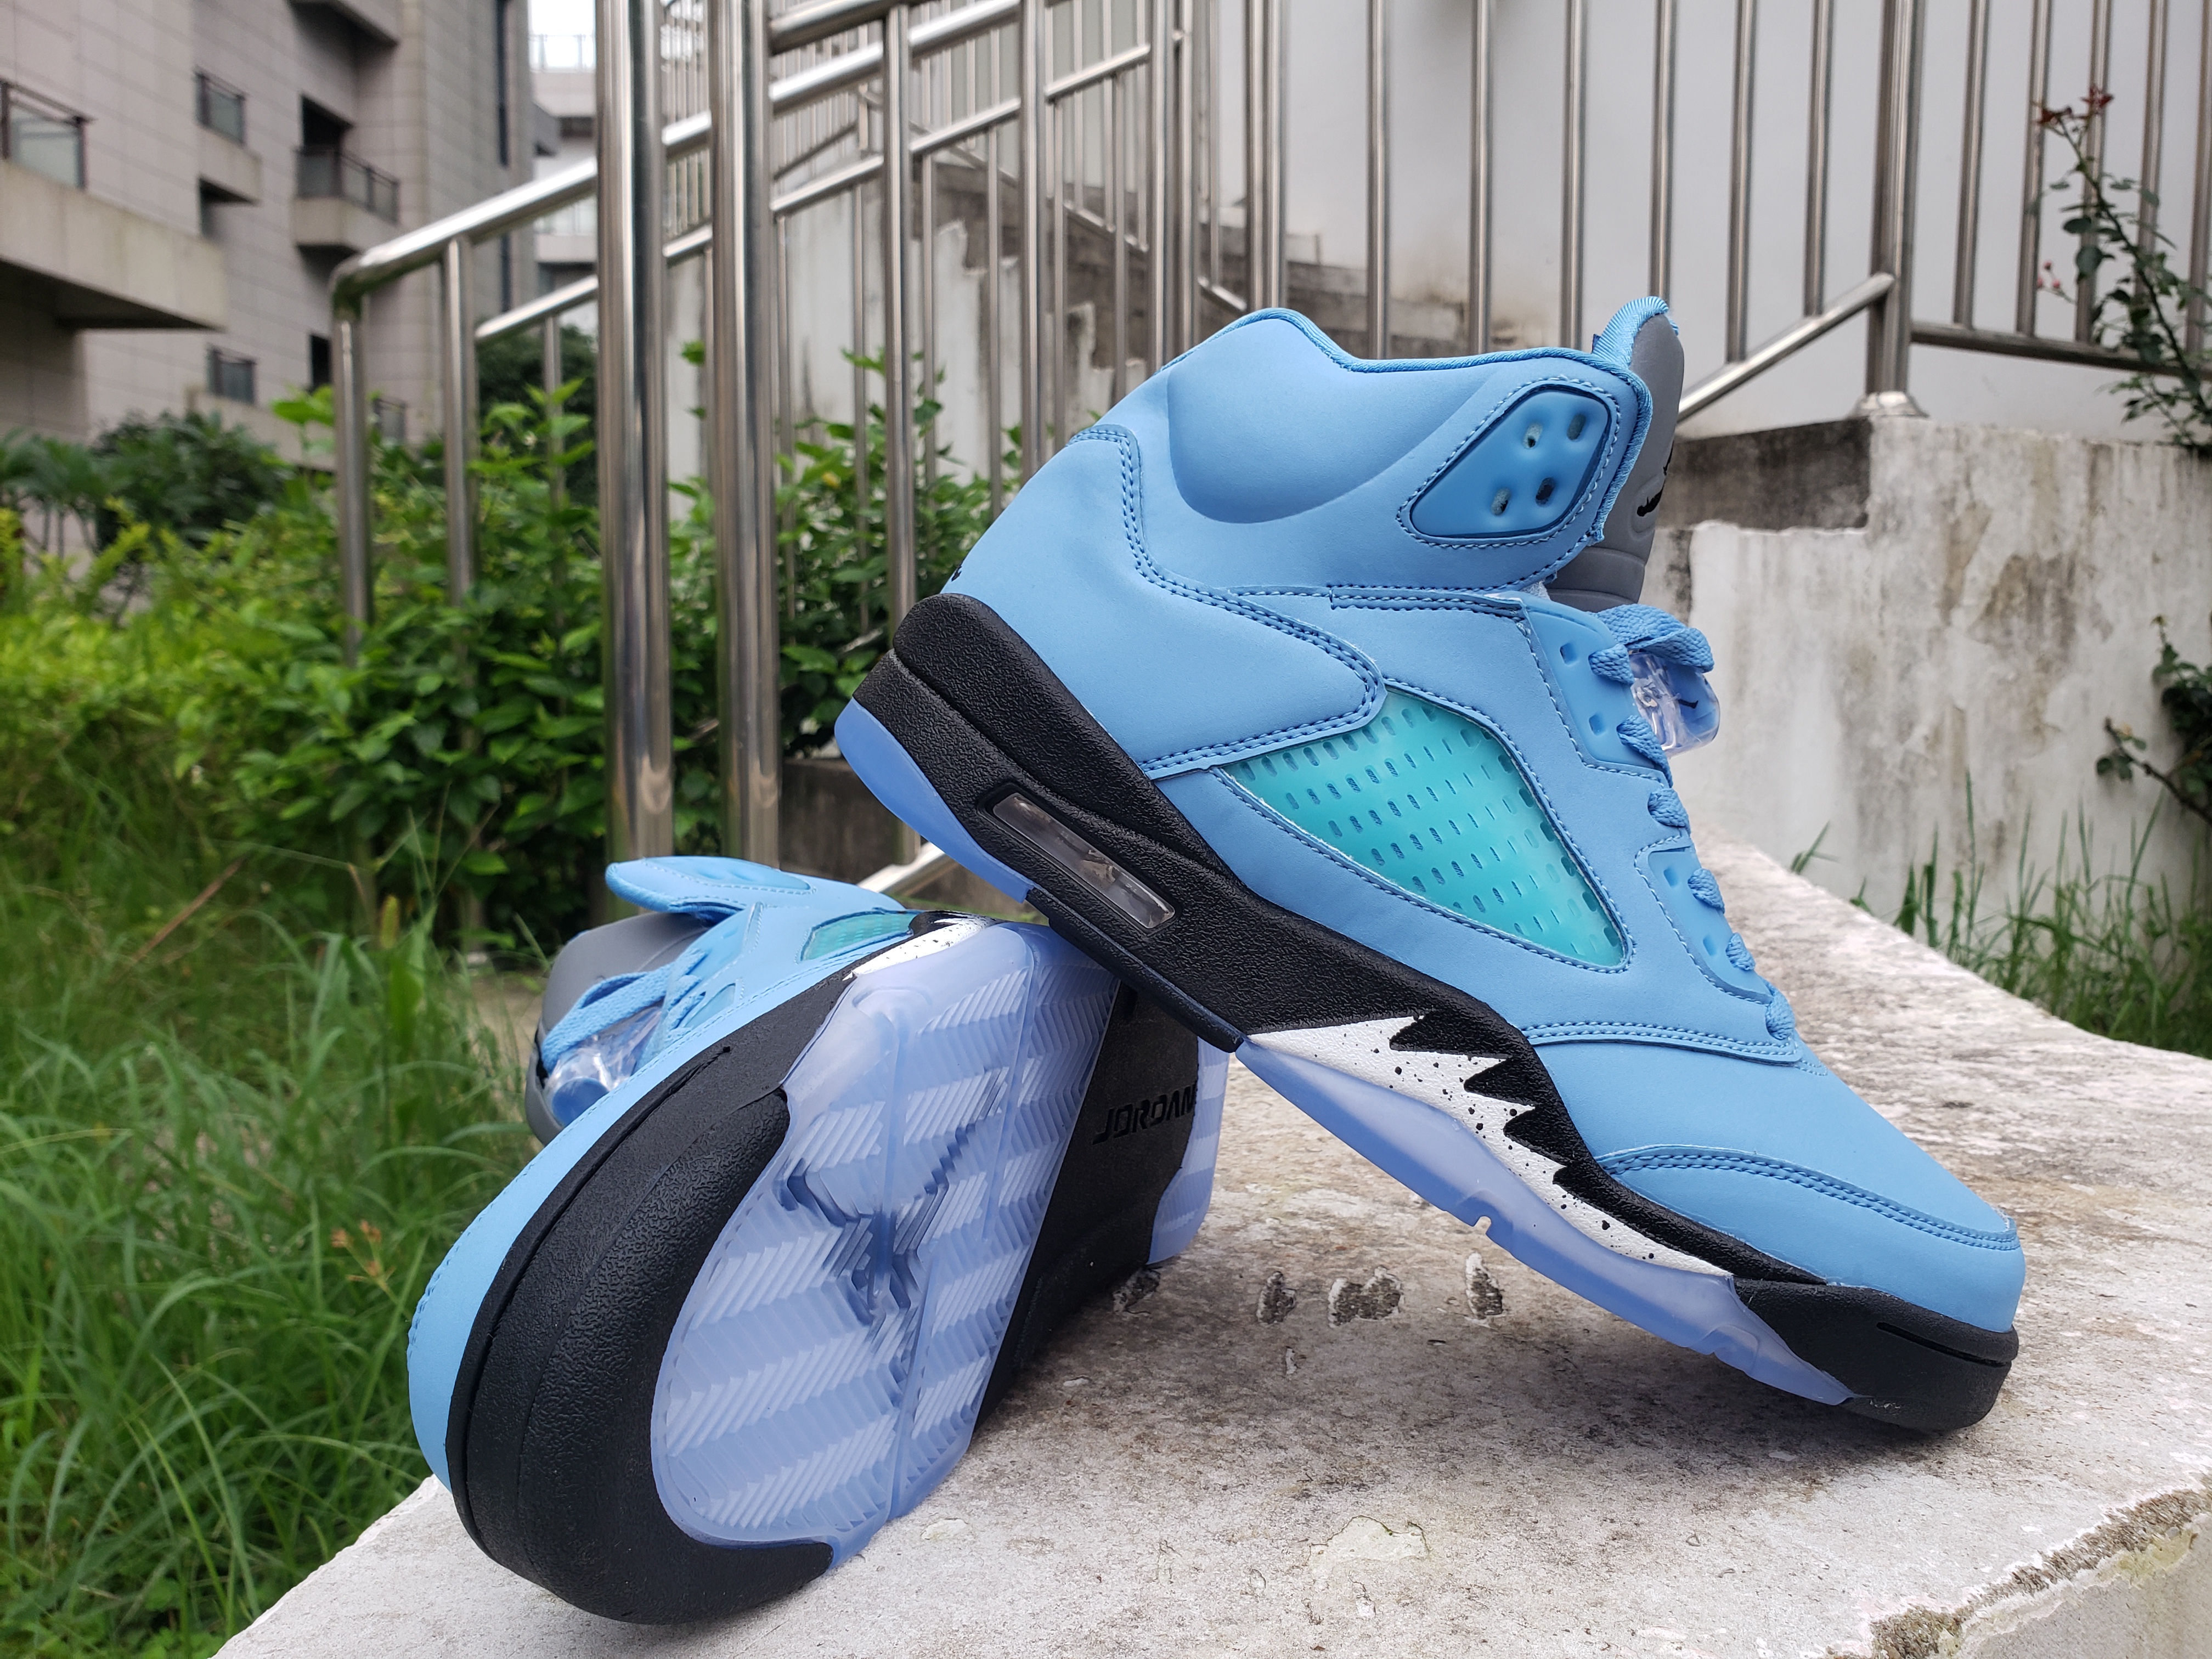 New 2022 Air Jordan 5 Retro Jade Blue Shoes